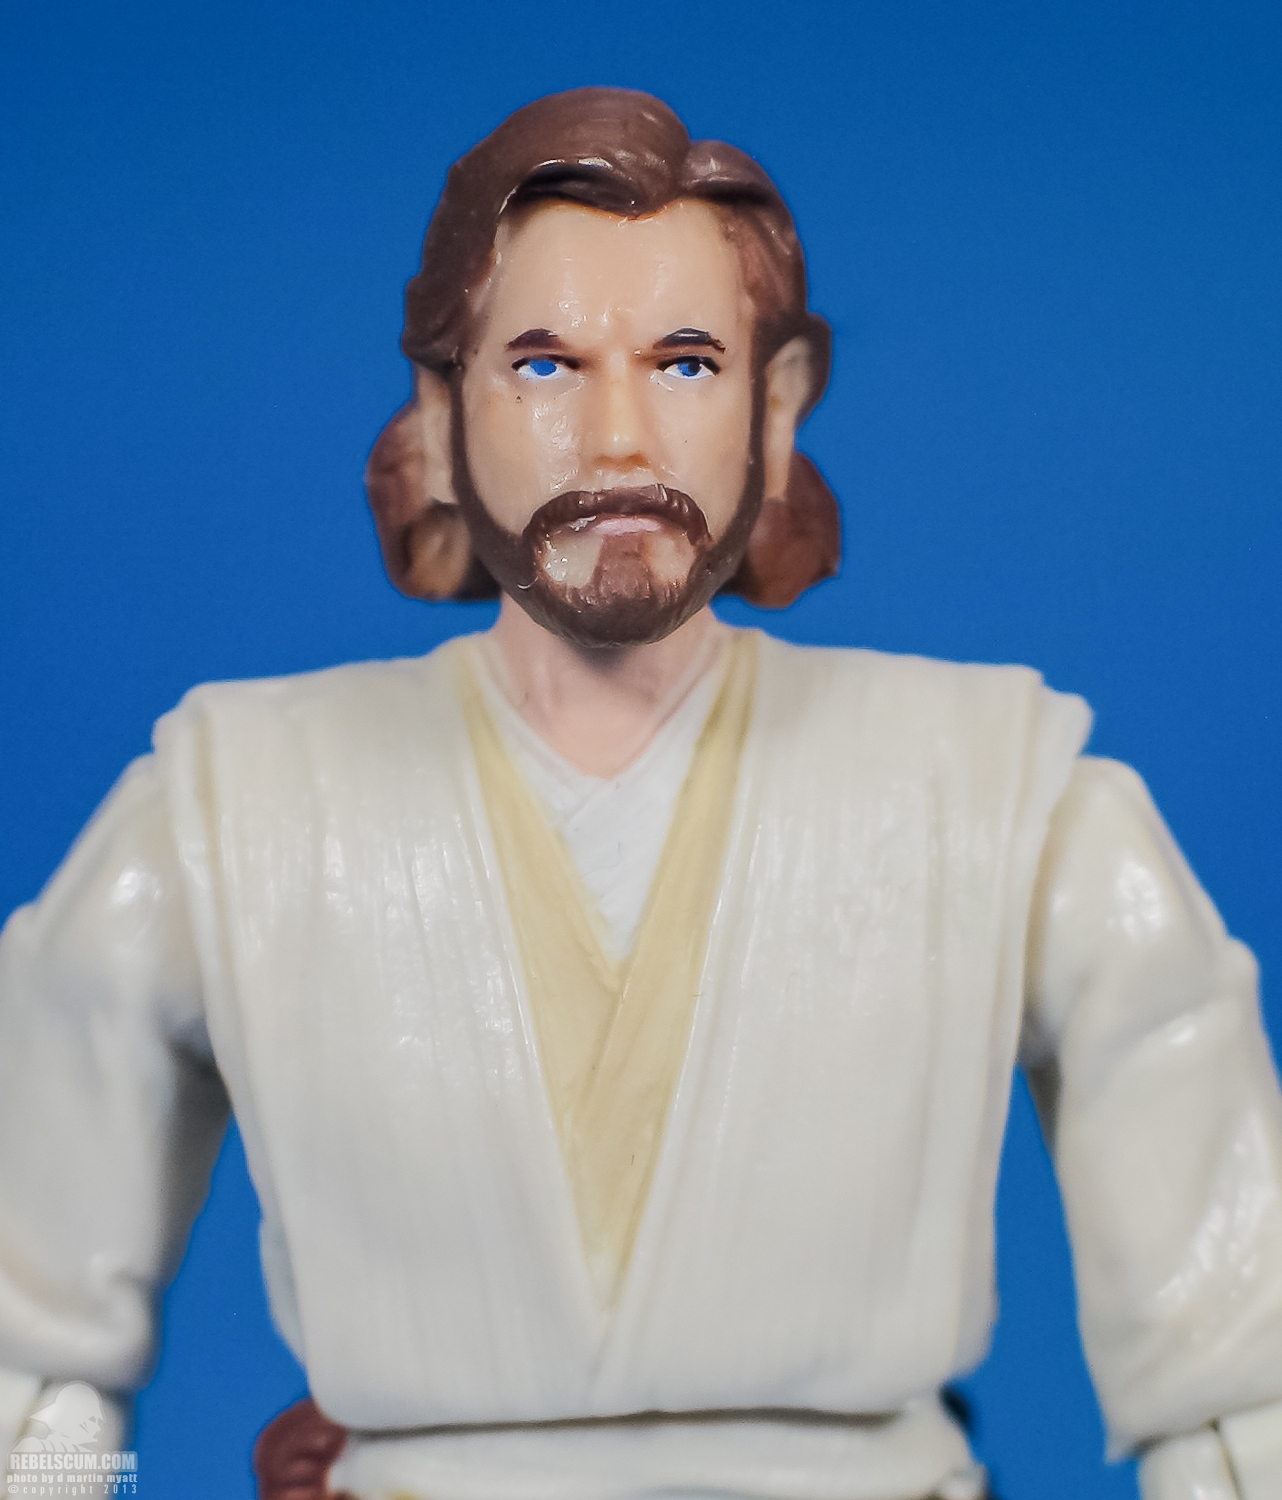 Obi-Wan_Kenobi_AOTC_Vintage_Collection_TVC_VC31-09.jpg